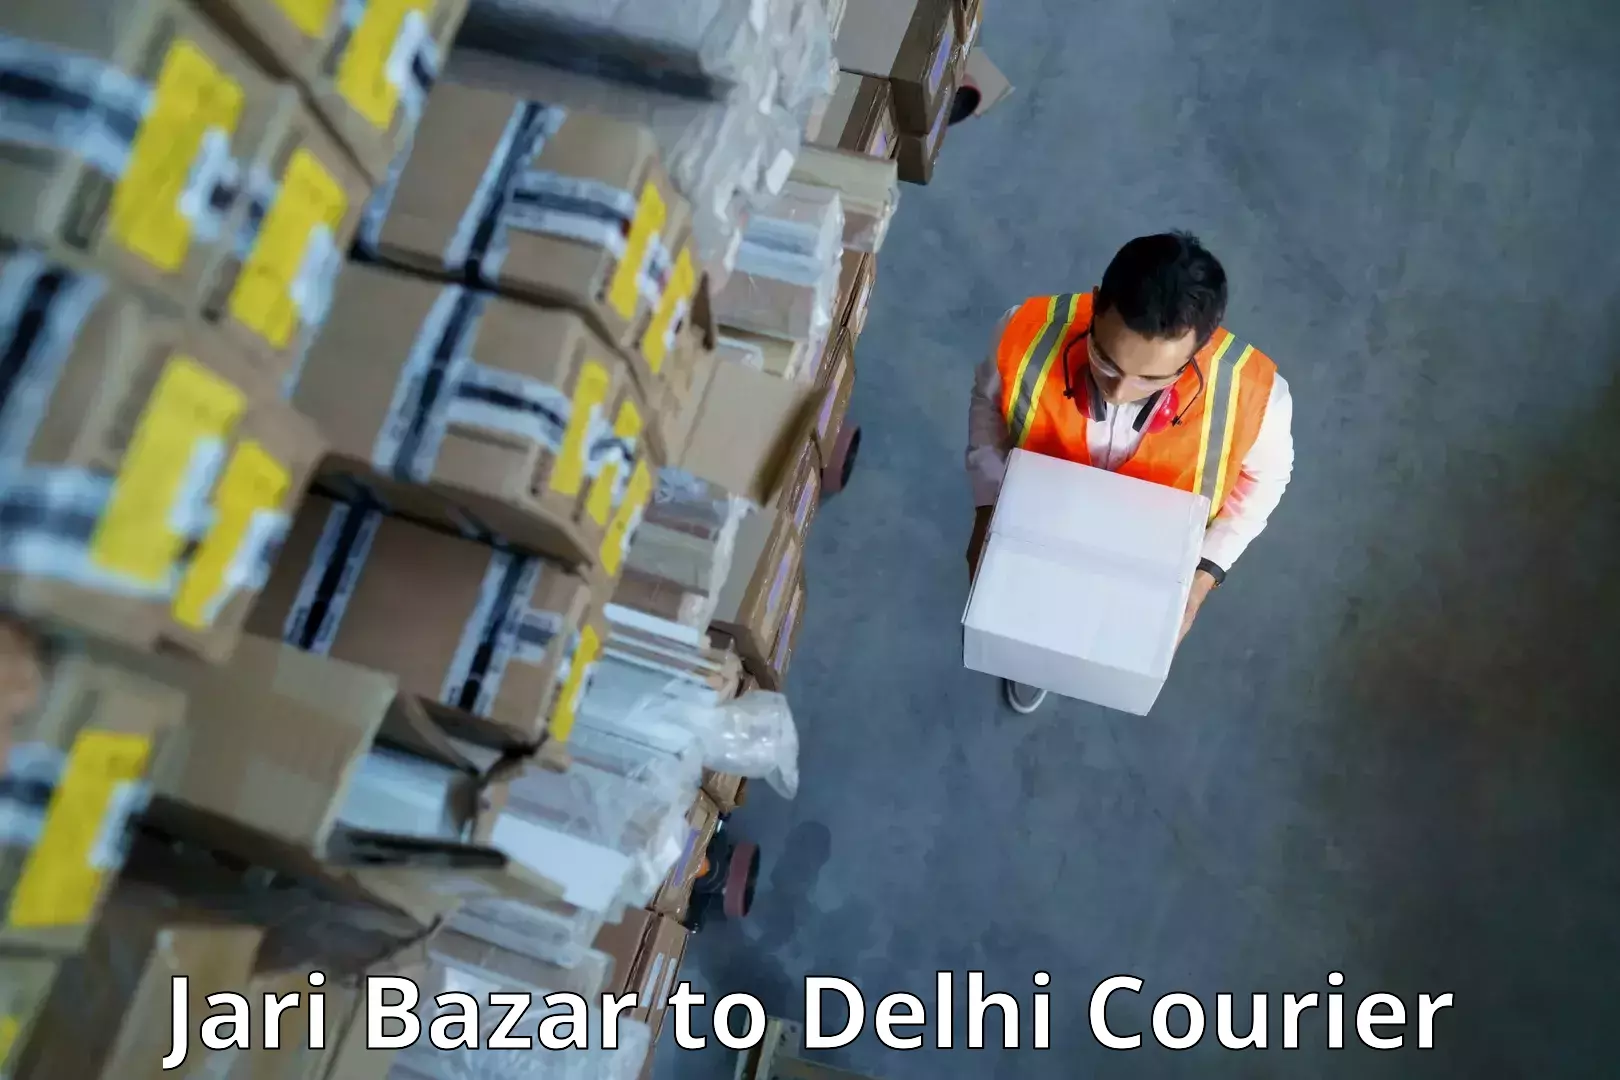 Local delivery service Jari Bazar to University of Delhi